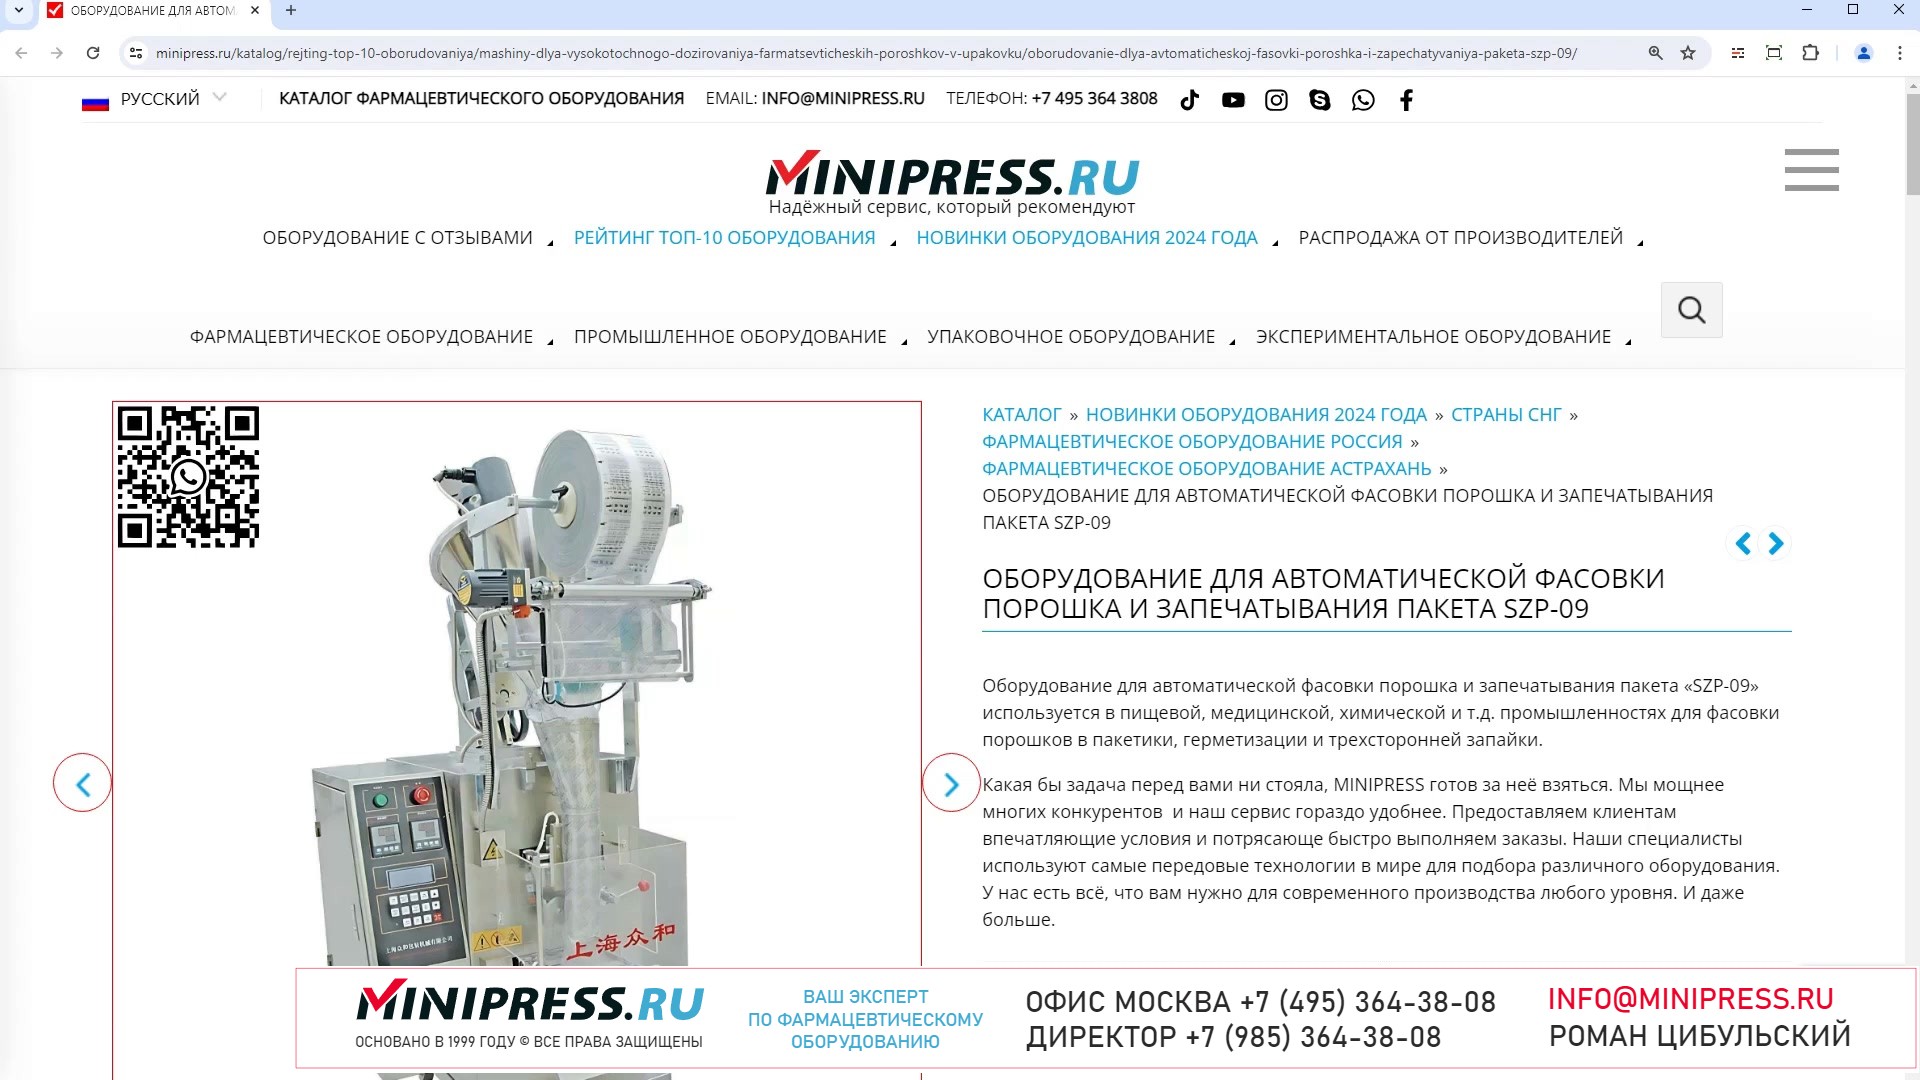 Minipress.ru Оборудование для автоматической фасовки порошка и запечатывания пакета SZP-09